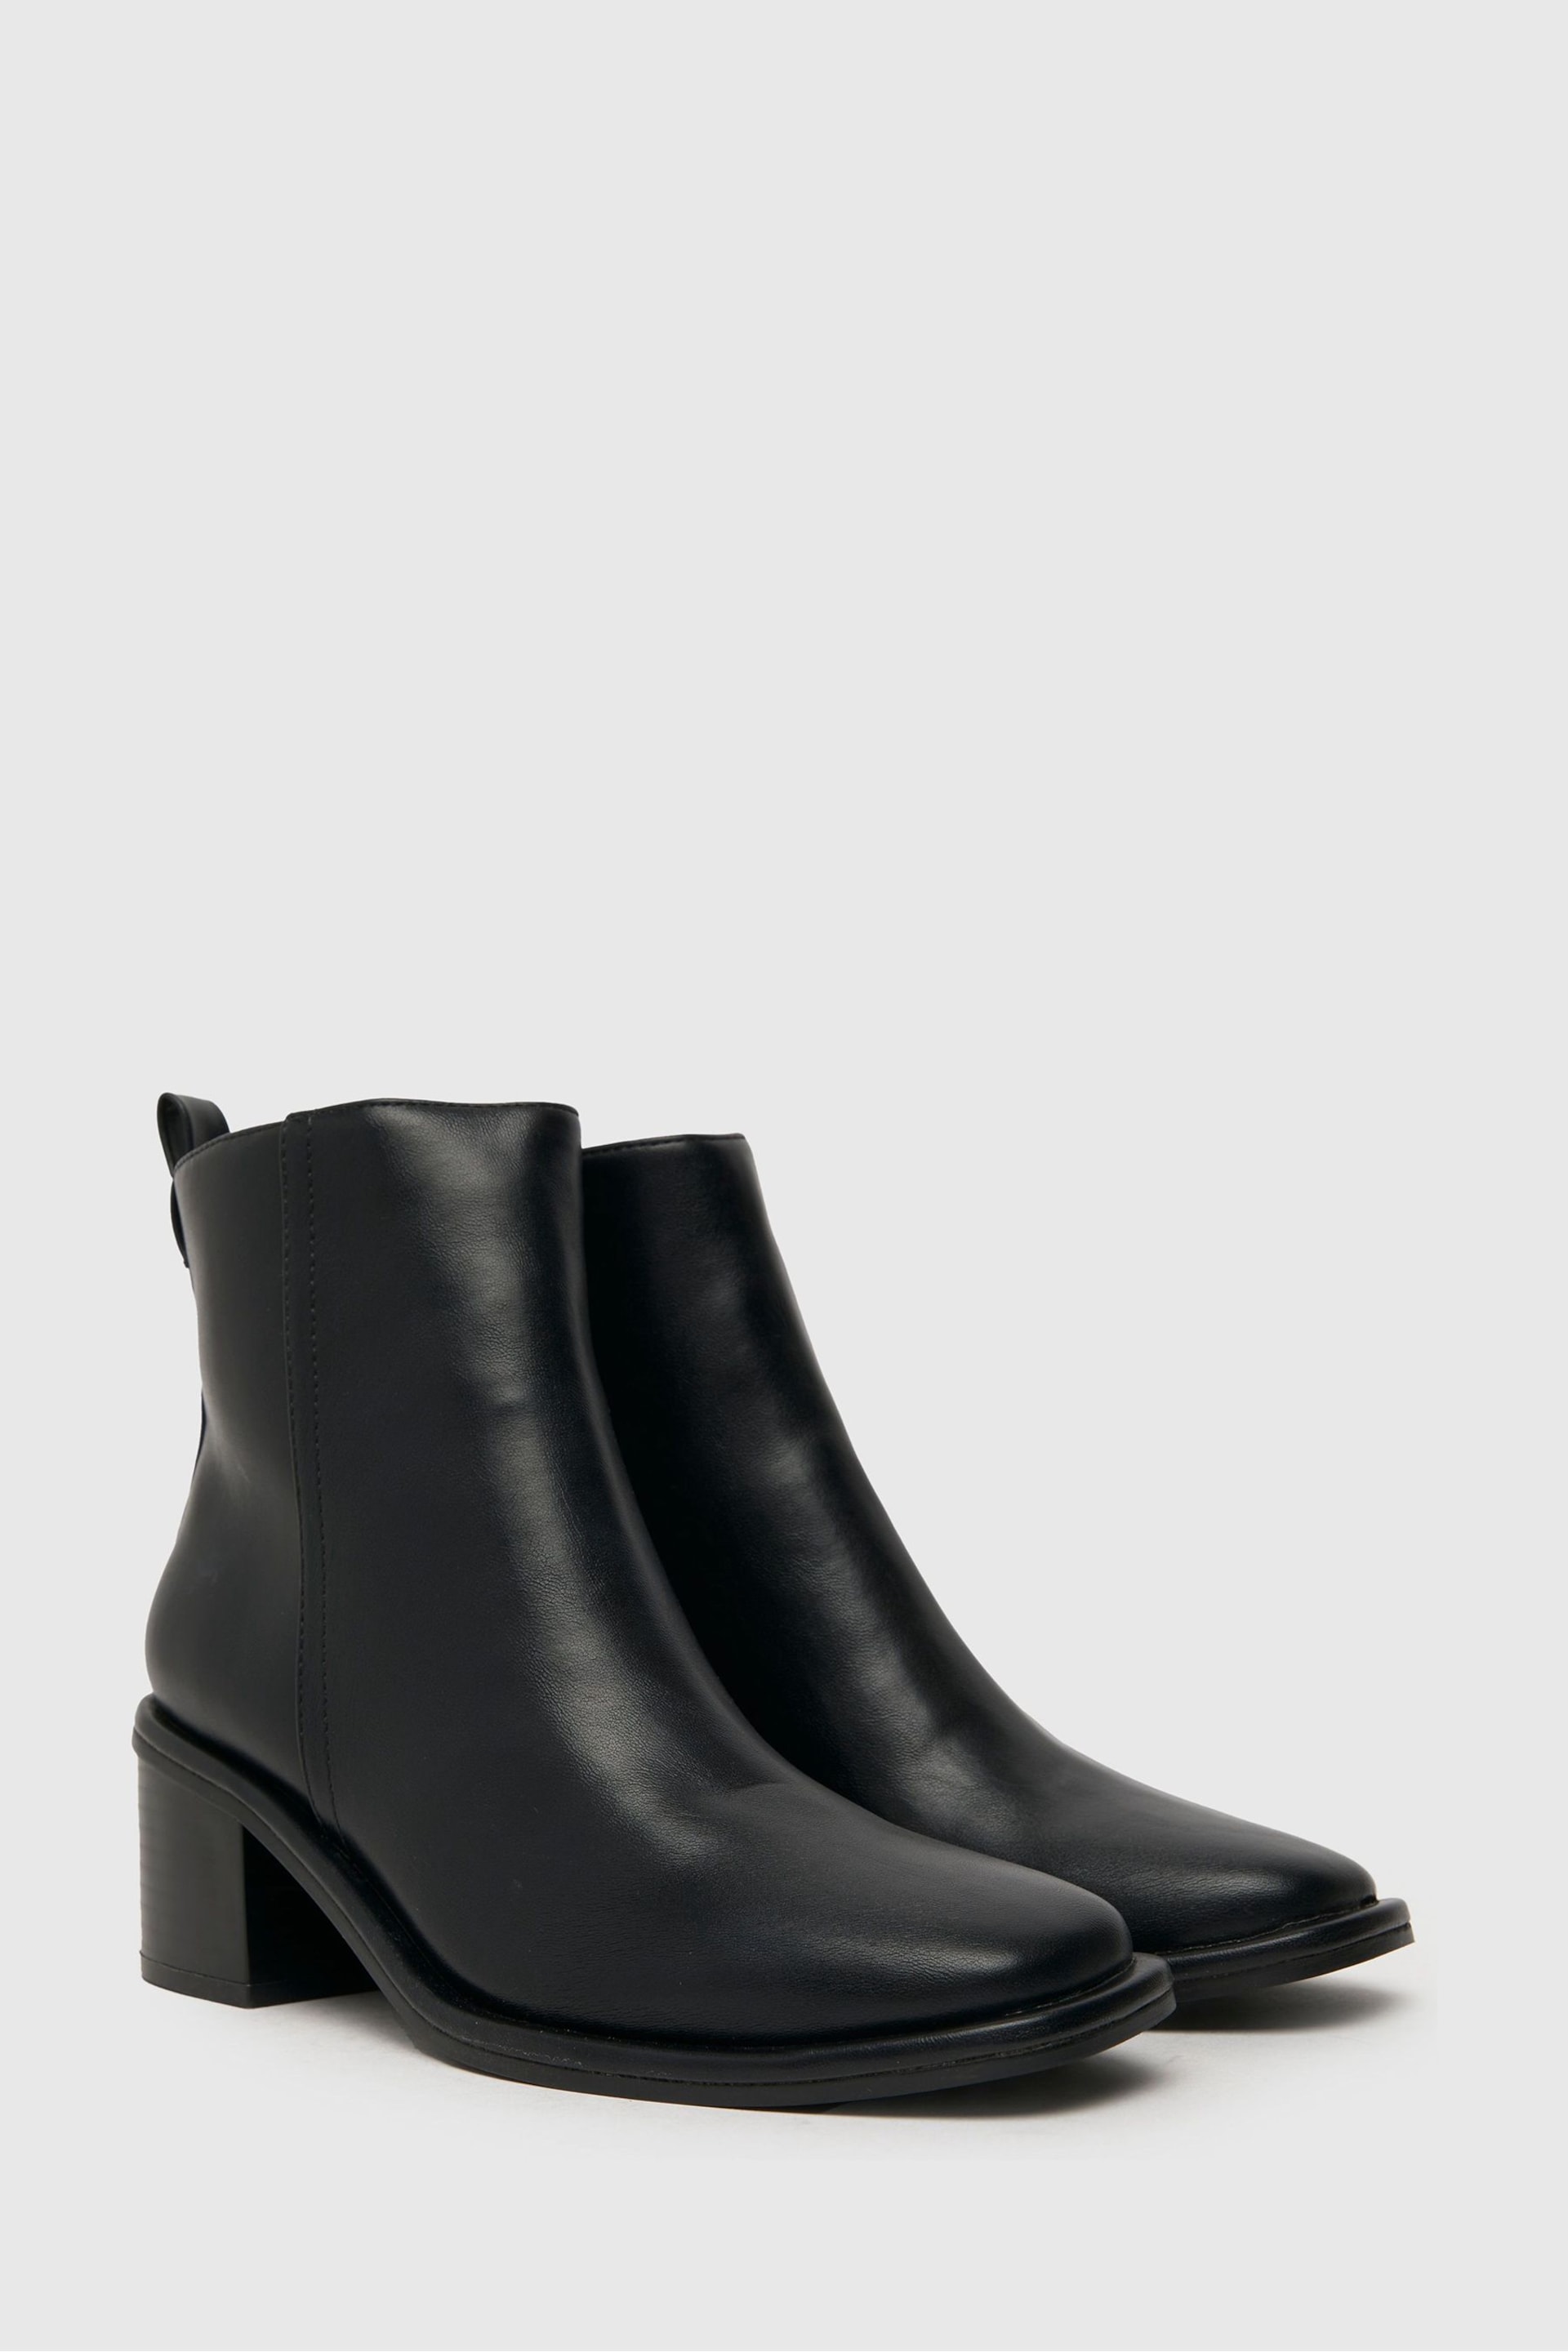 Schuh Bryony Block Heel Boots - Image 2 of 4